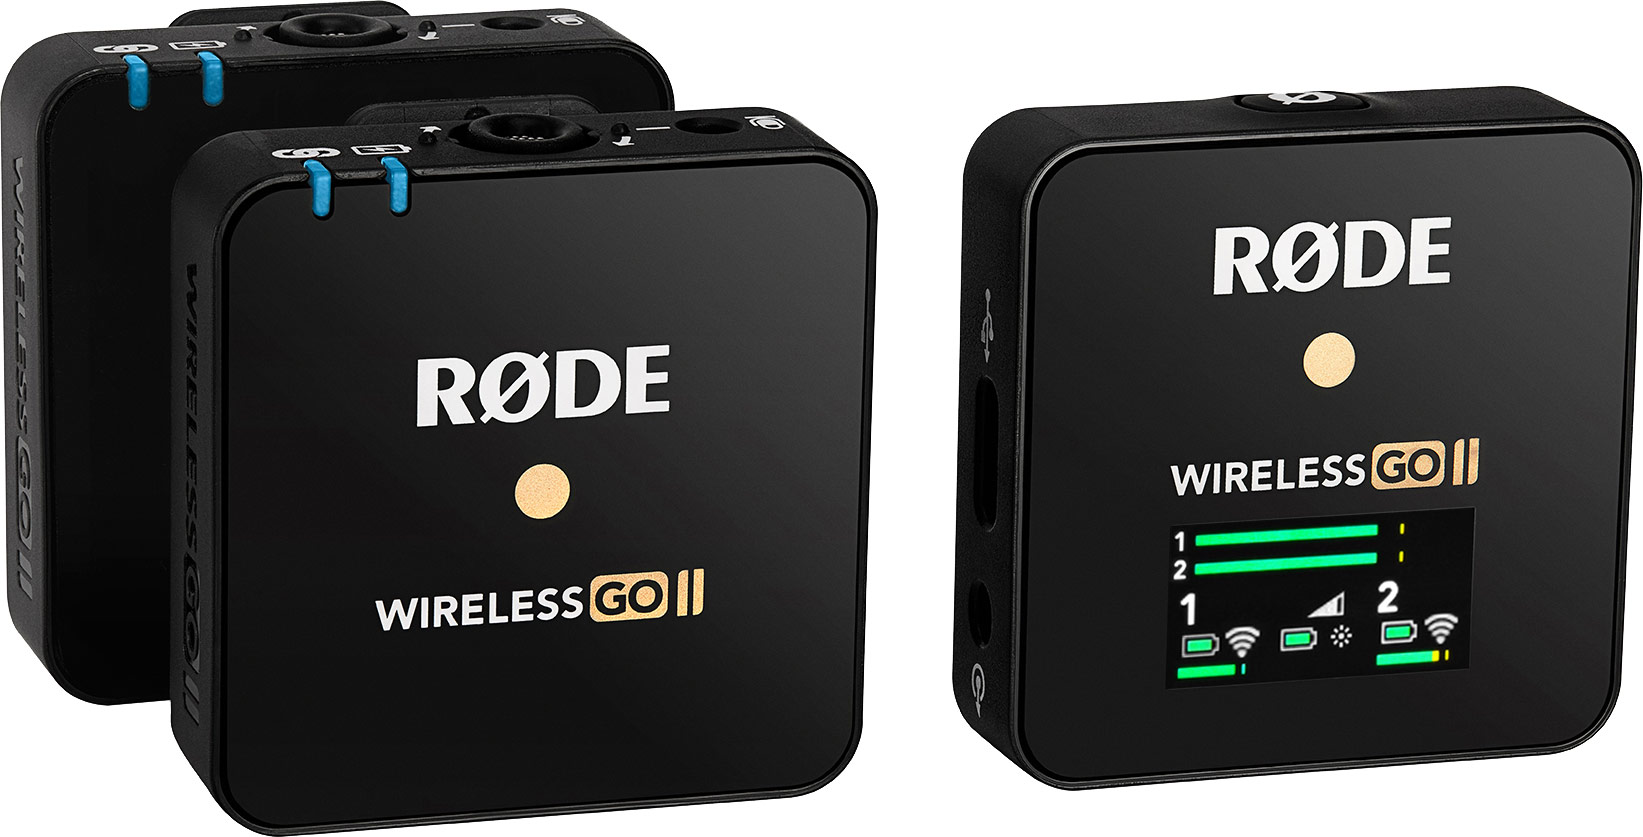 Rode Wireless Go II | guitarguitar